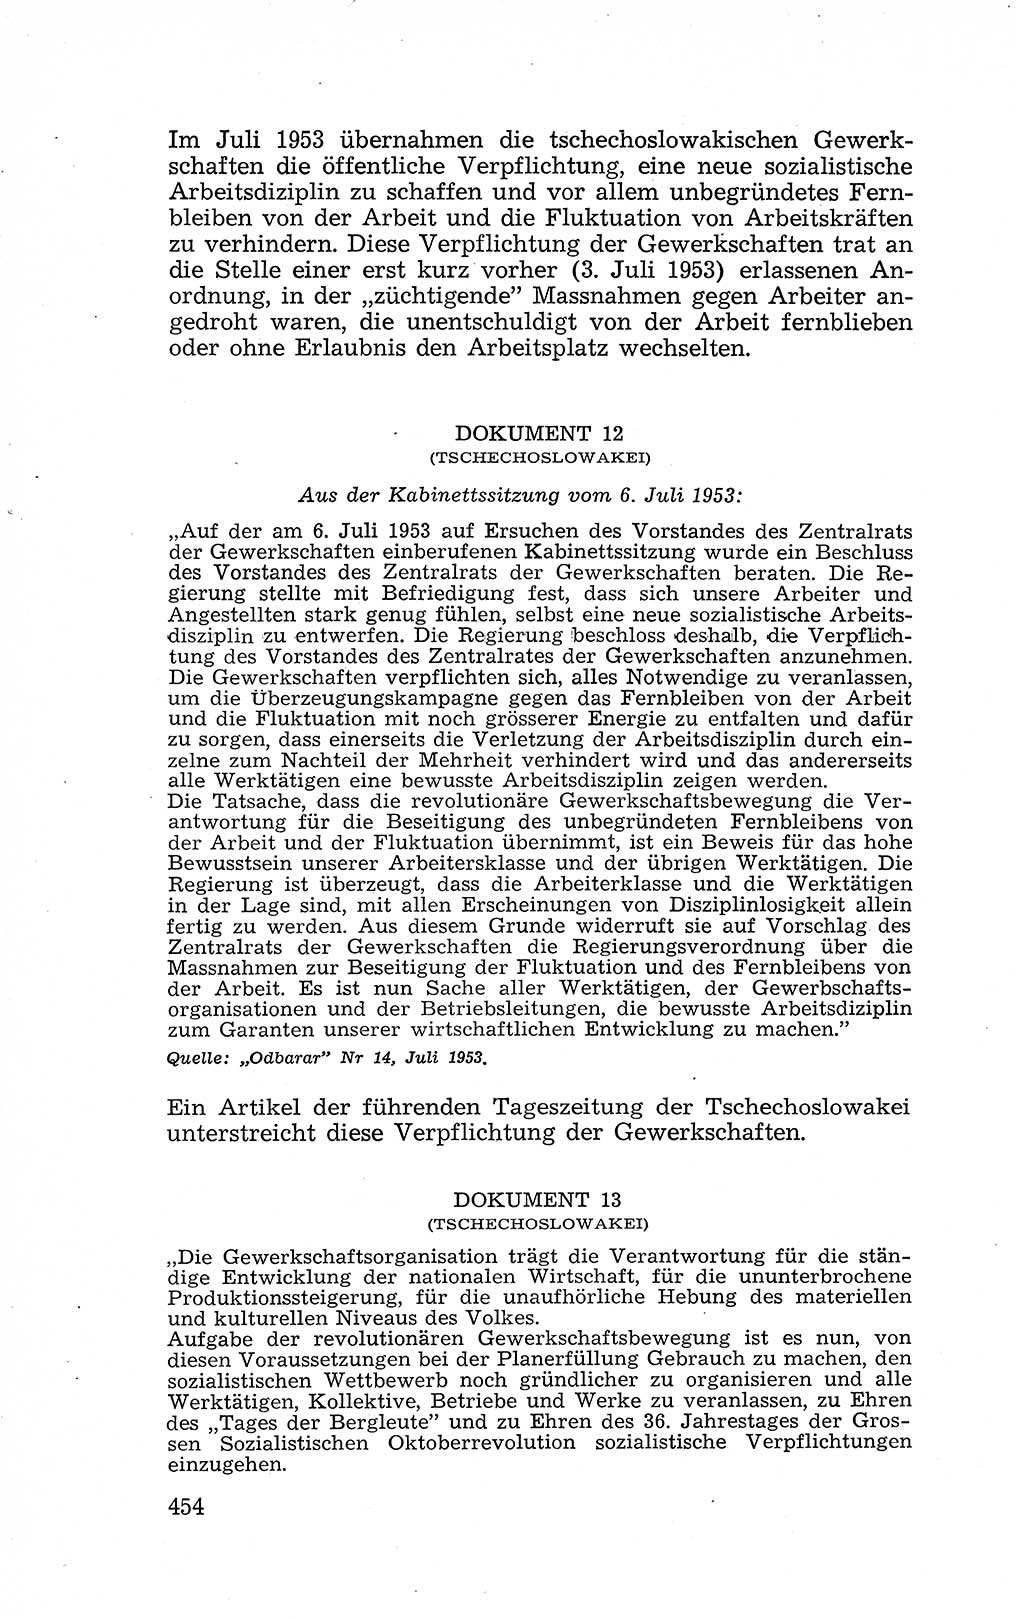 Recht in Fesseln, Dokumente, Internationale Juristen-Kommission [Bundesrepublik Deutschland (BRD)] 1955, Seite 454 (R. Dok. IJK BRD 1955, S. 454)